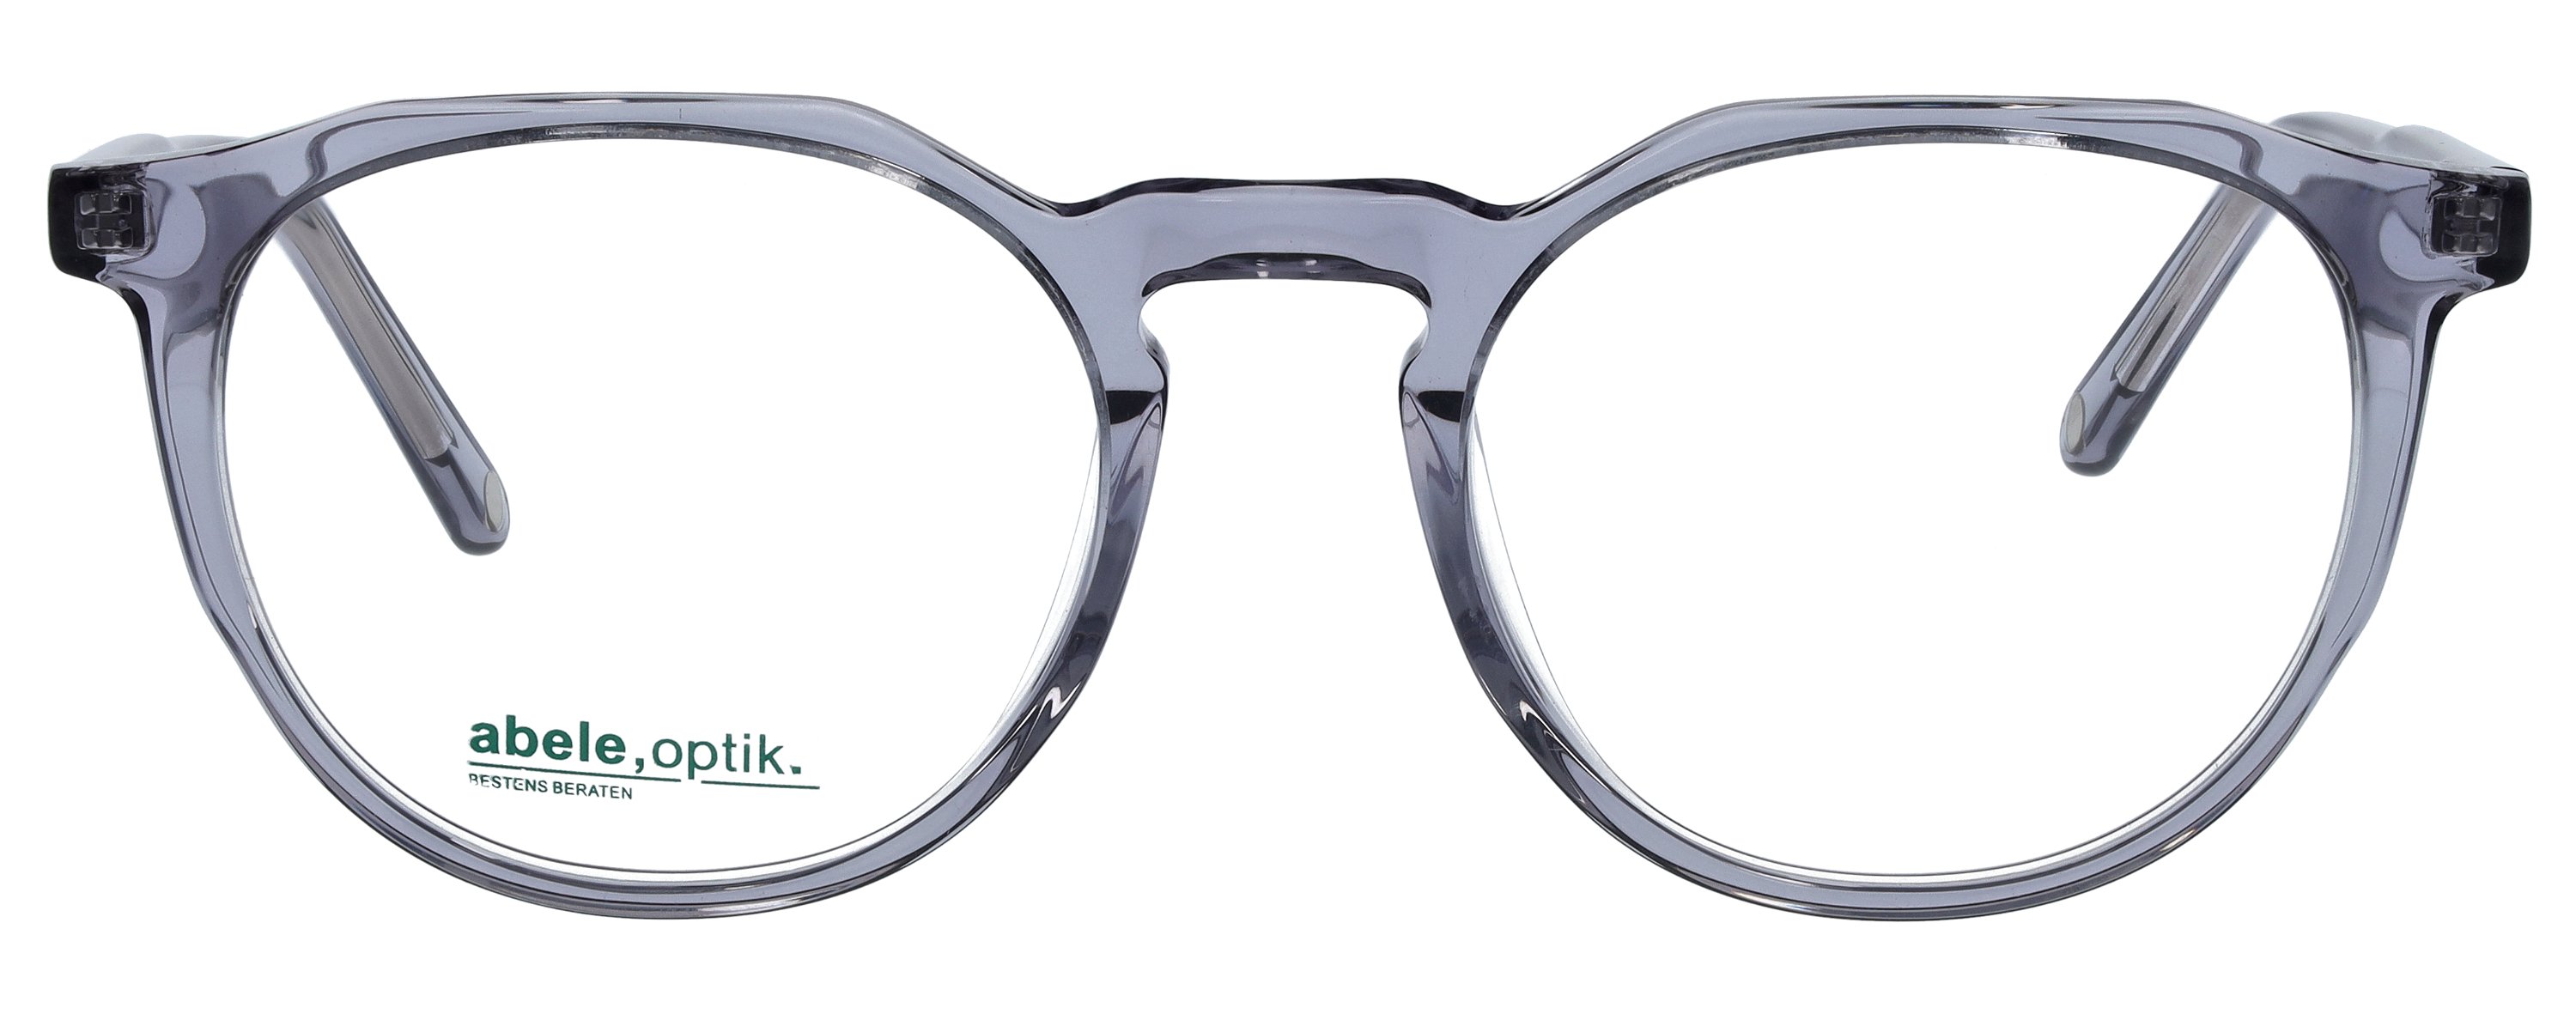 Das Bild zeigt die Korrektionsbrille 148192 von der Marke Abele Optik in grau transparent.